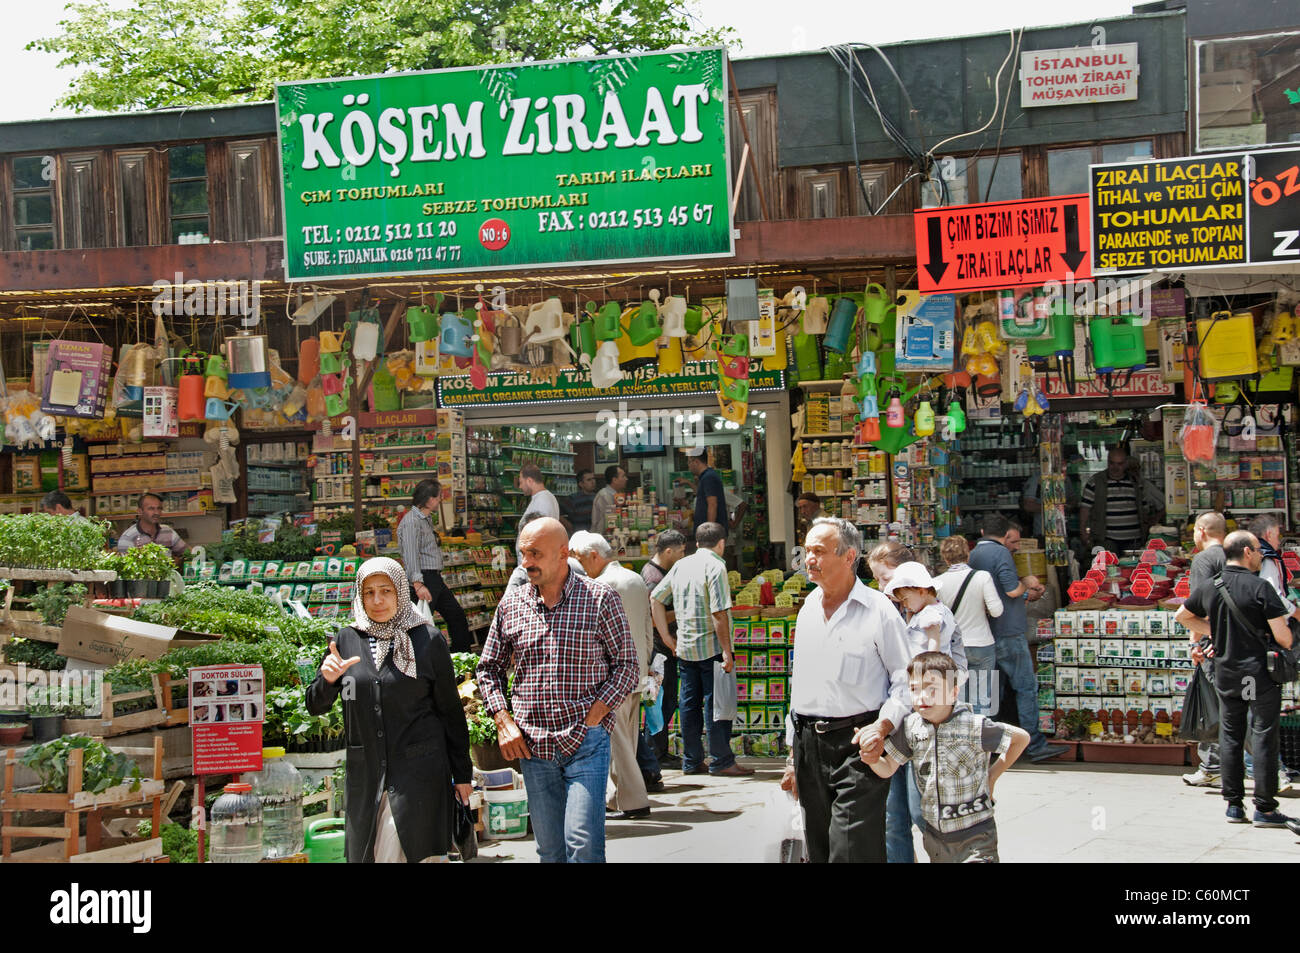 Istanbul Grand Bazaar Türkei Kapali Carsi Kapalıcarsı Handel Kräuter aus dem Garten Stockfoto